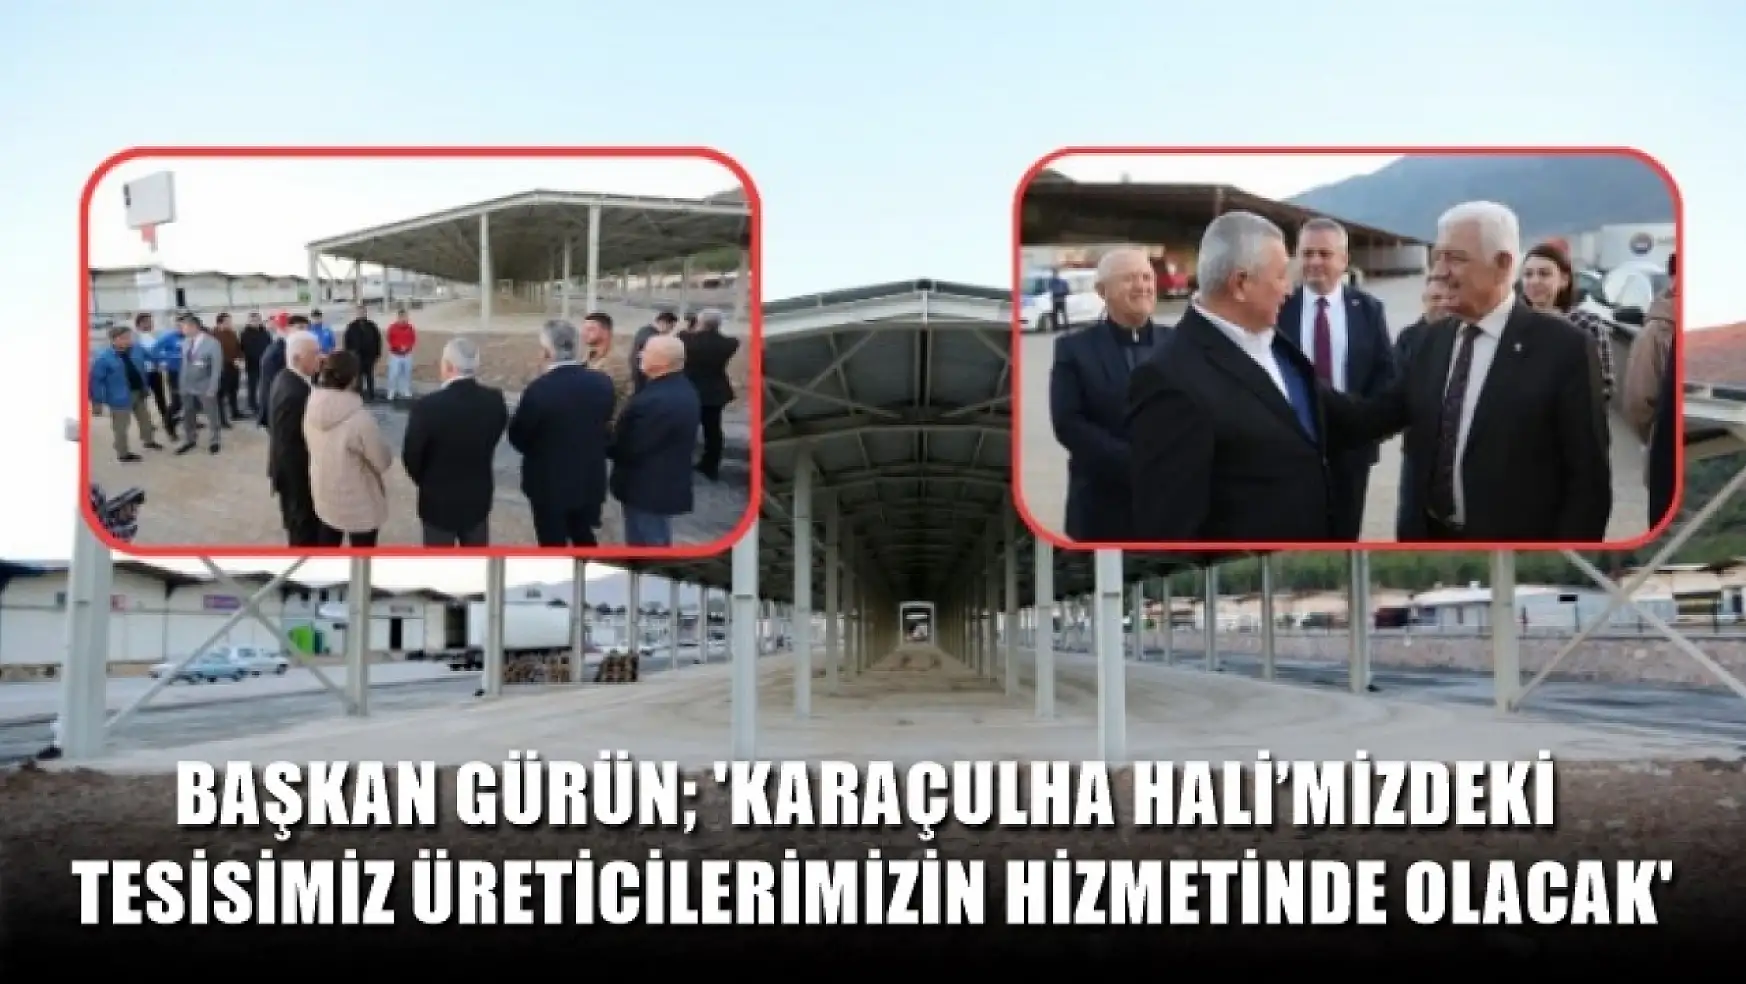 Başkan Gürün 'Karaçulha Hali'mizdeki tesisimiz üreticilerimizin hizmetinde olacak'